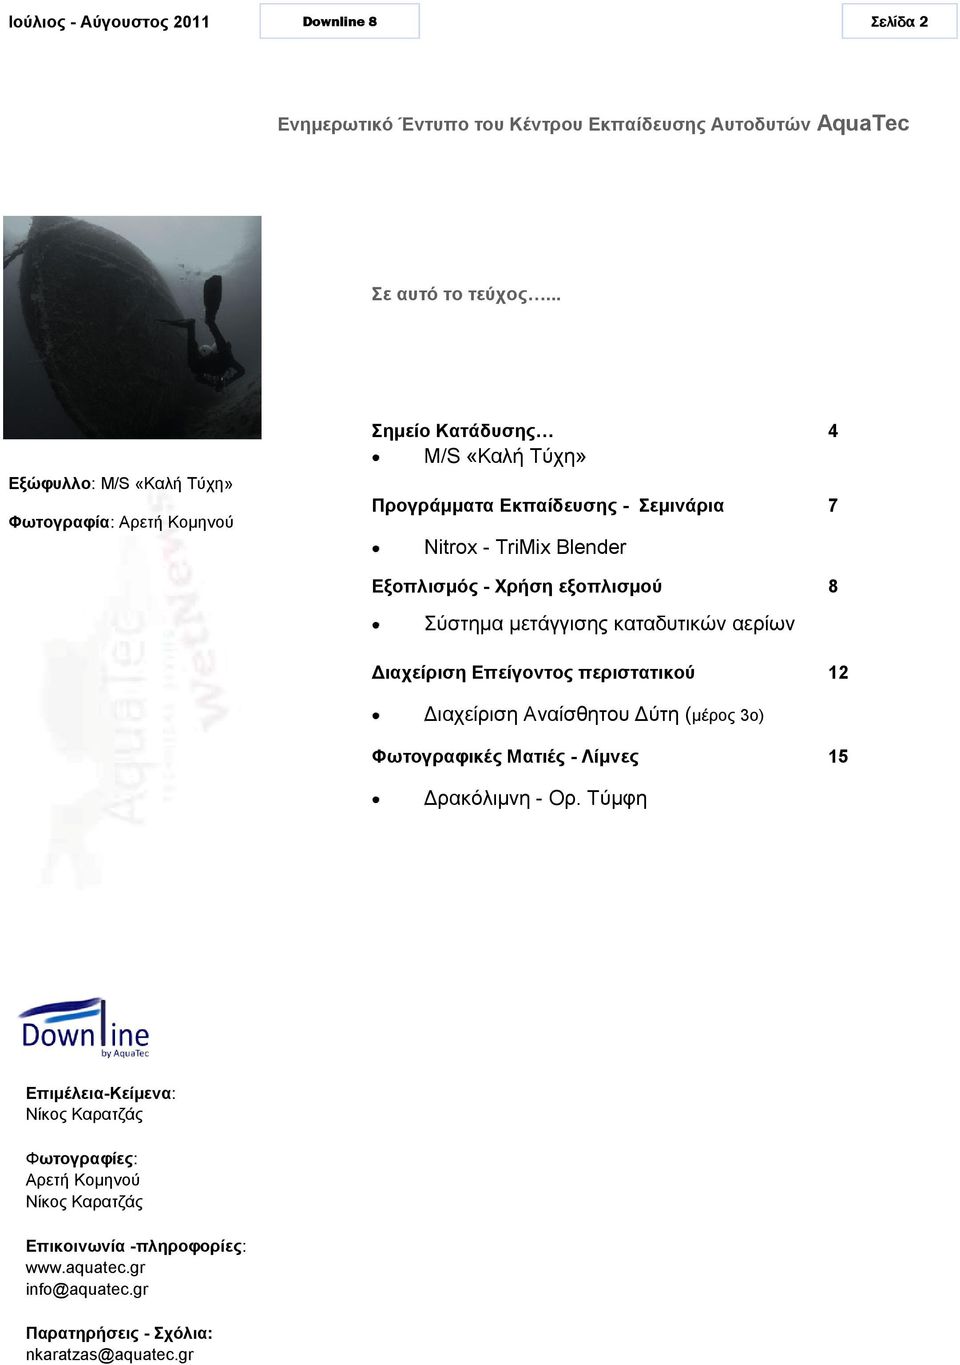 Εξοπλισμός - Χρήση εξοπλισμού Σύστημα μετάγγισης καταδυτικών αερίων Διαχείριση Επείγοντος περιστατικού Επιμέλεια-Κείμενα: Νίκος Καρατζάς Φωτογραφίες: Αρετή